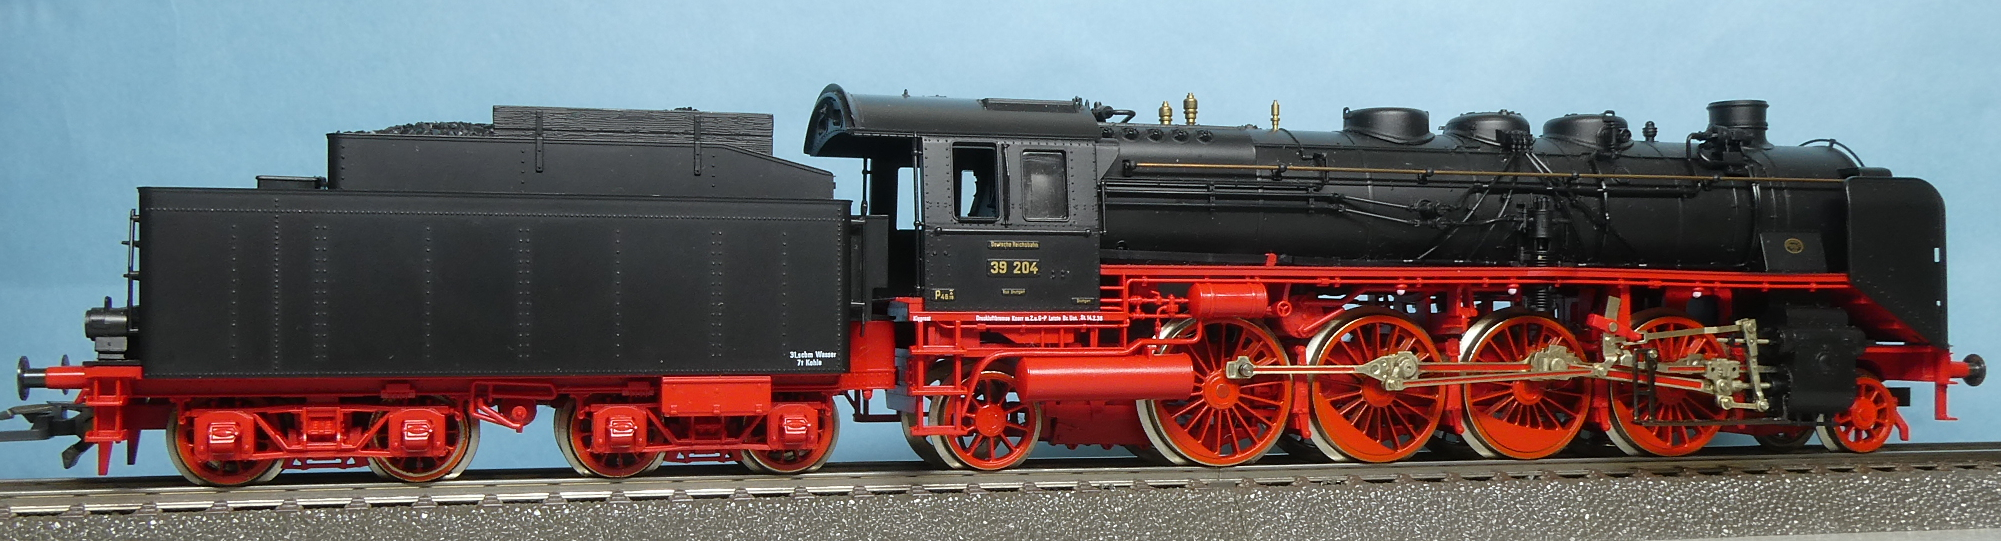 ドイツ国鉄 DRG 旅客用テンダ式蒸気機関車 BR 39.0-2 204号機